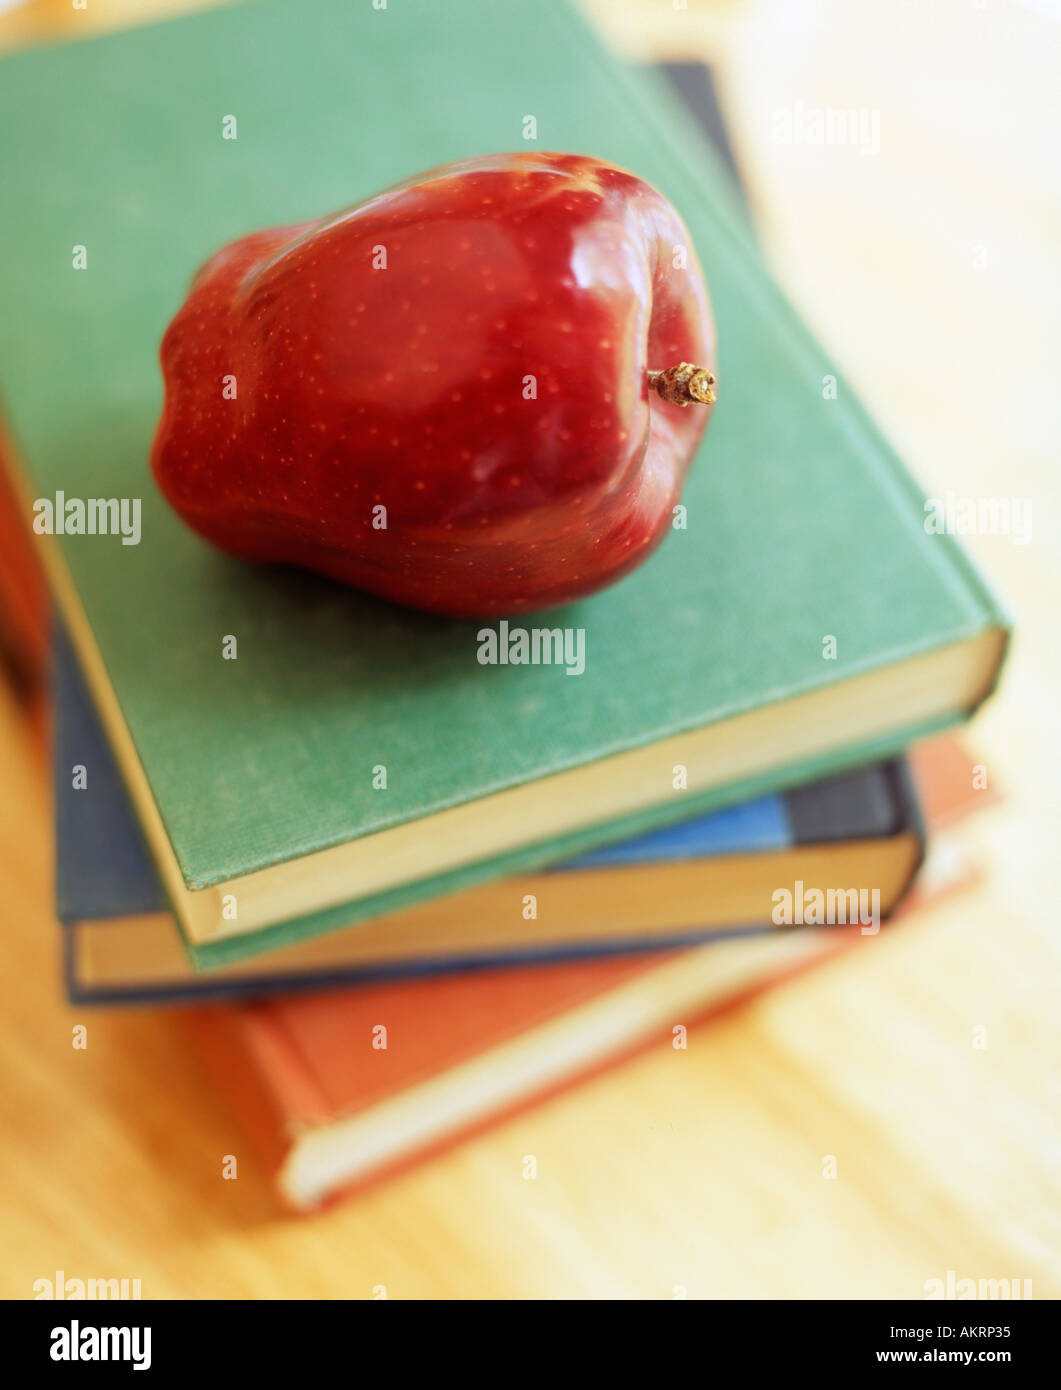 Scuola ancora vita con mela rossa sulla parte superiore della pila di libri Foto Stock